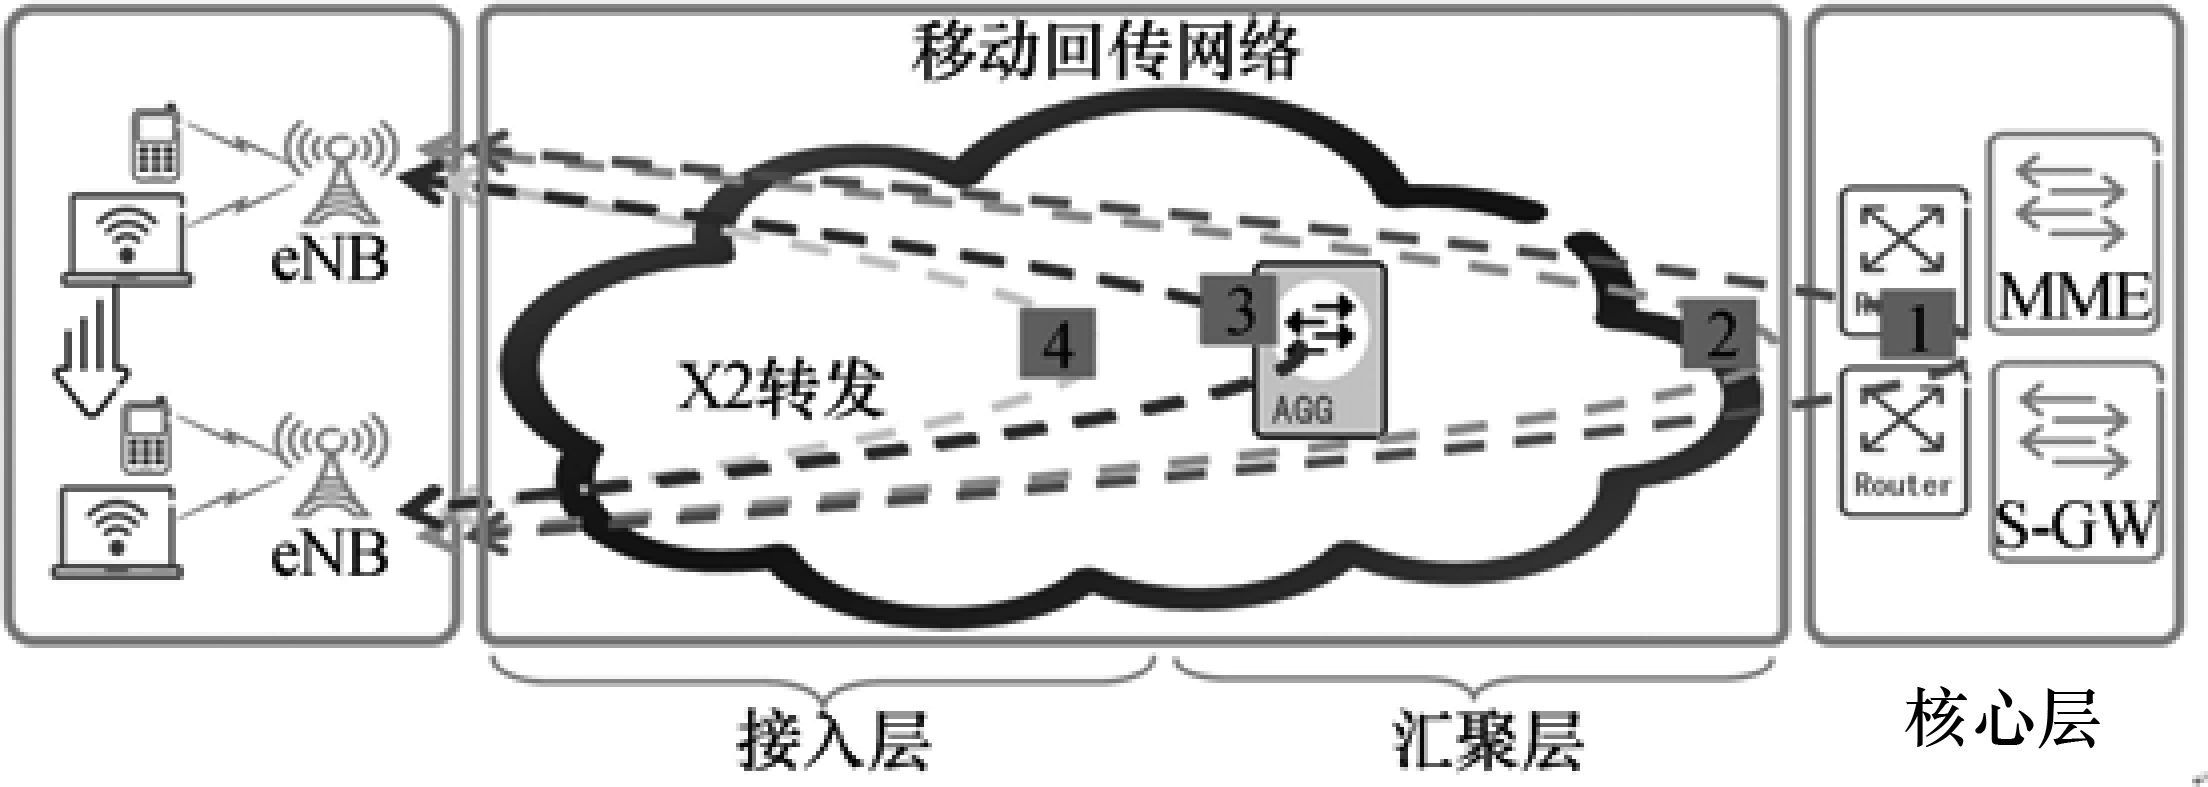 圖5  LTE移動回傳網路三層功能部署方案圖